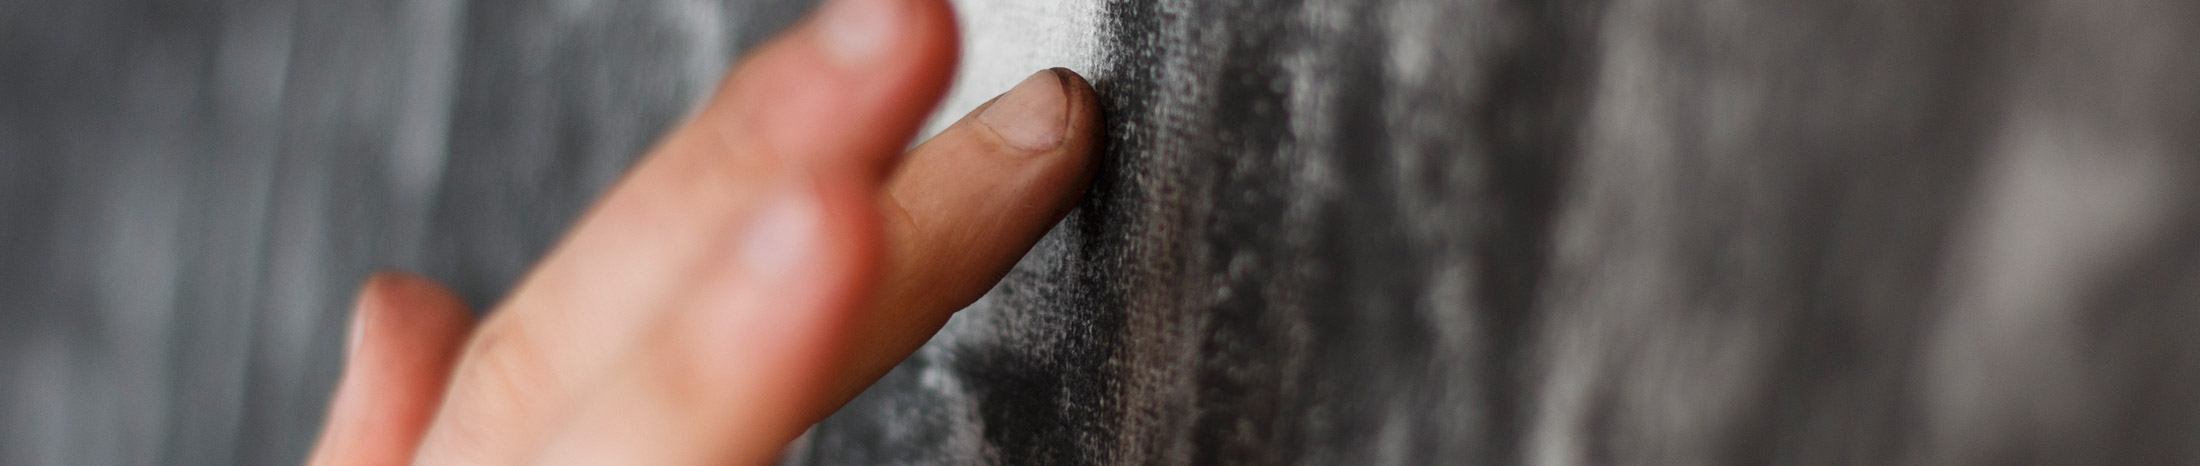 Kohlezeichnung auf Papier mit Fingern verwischen